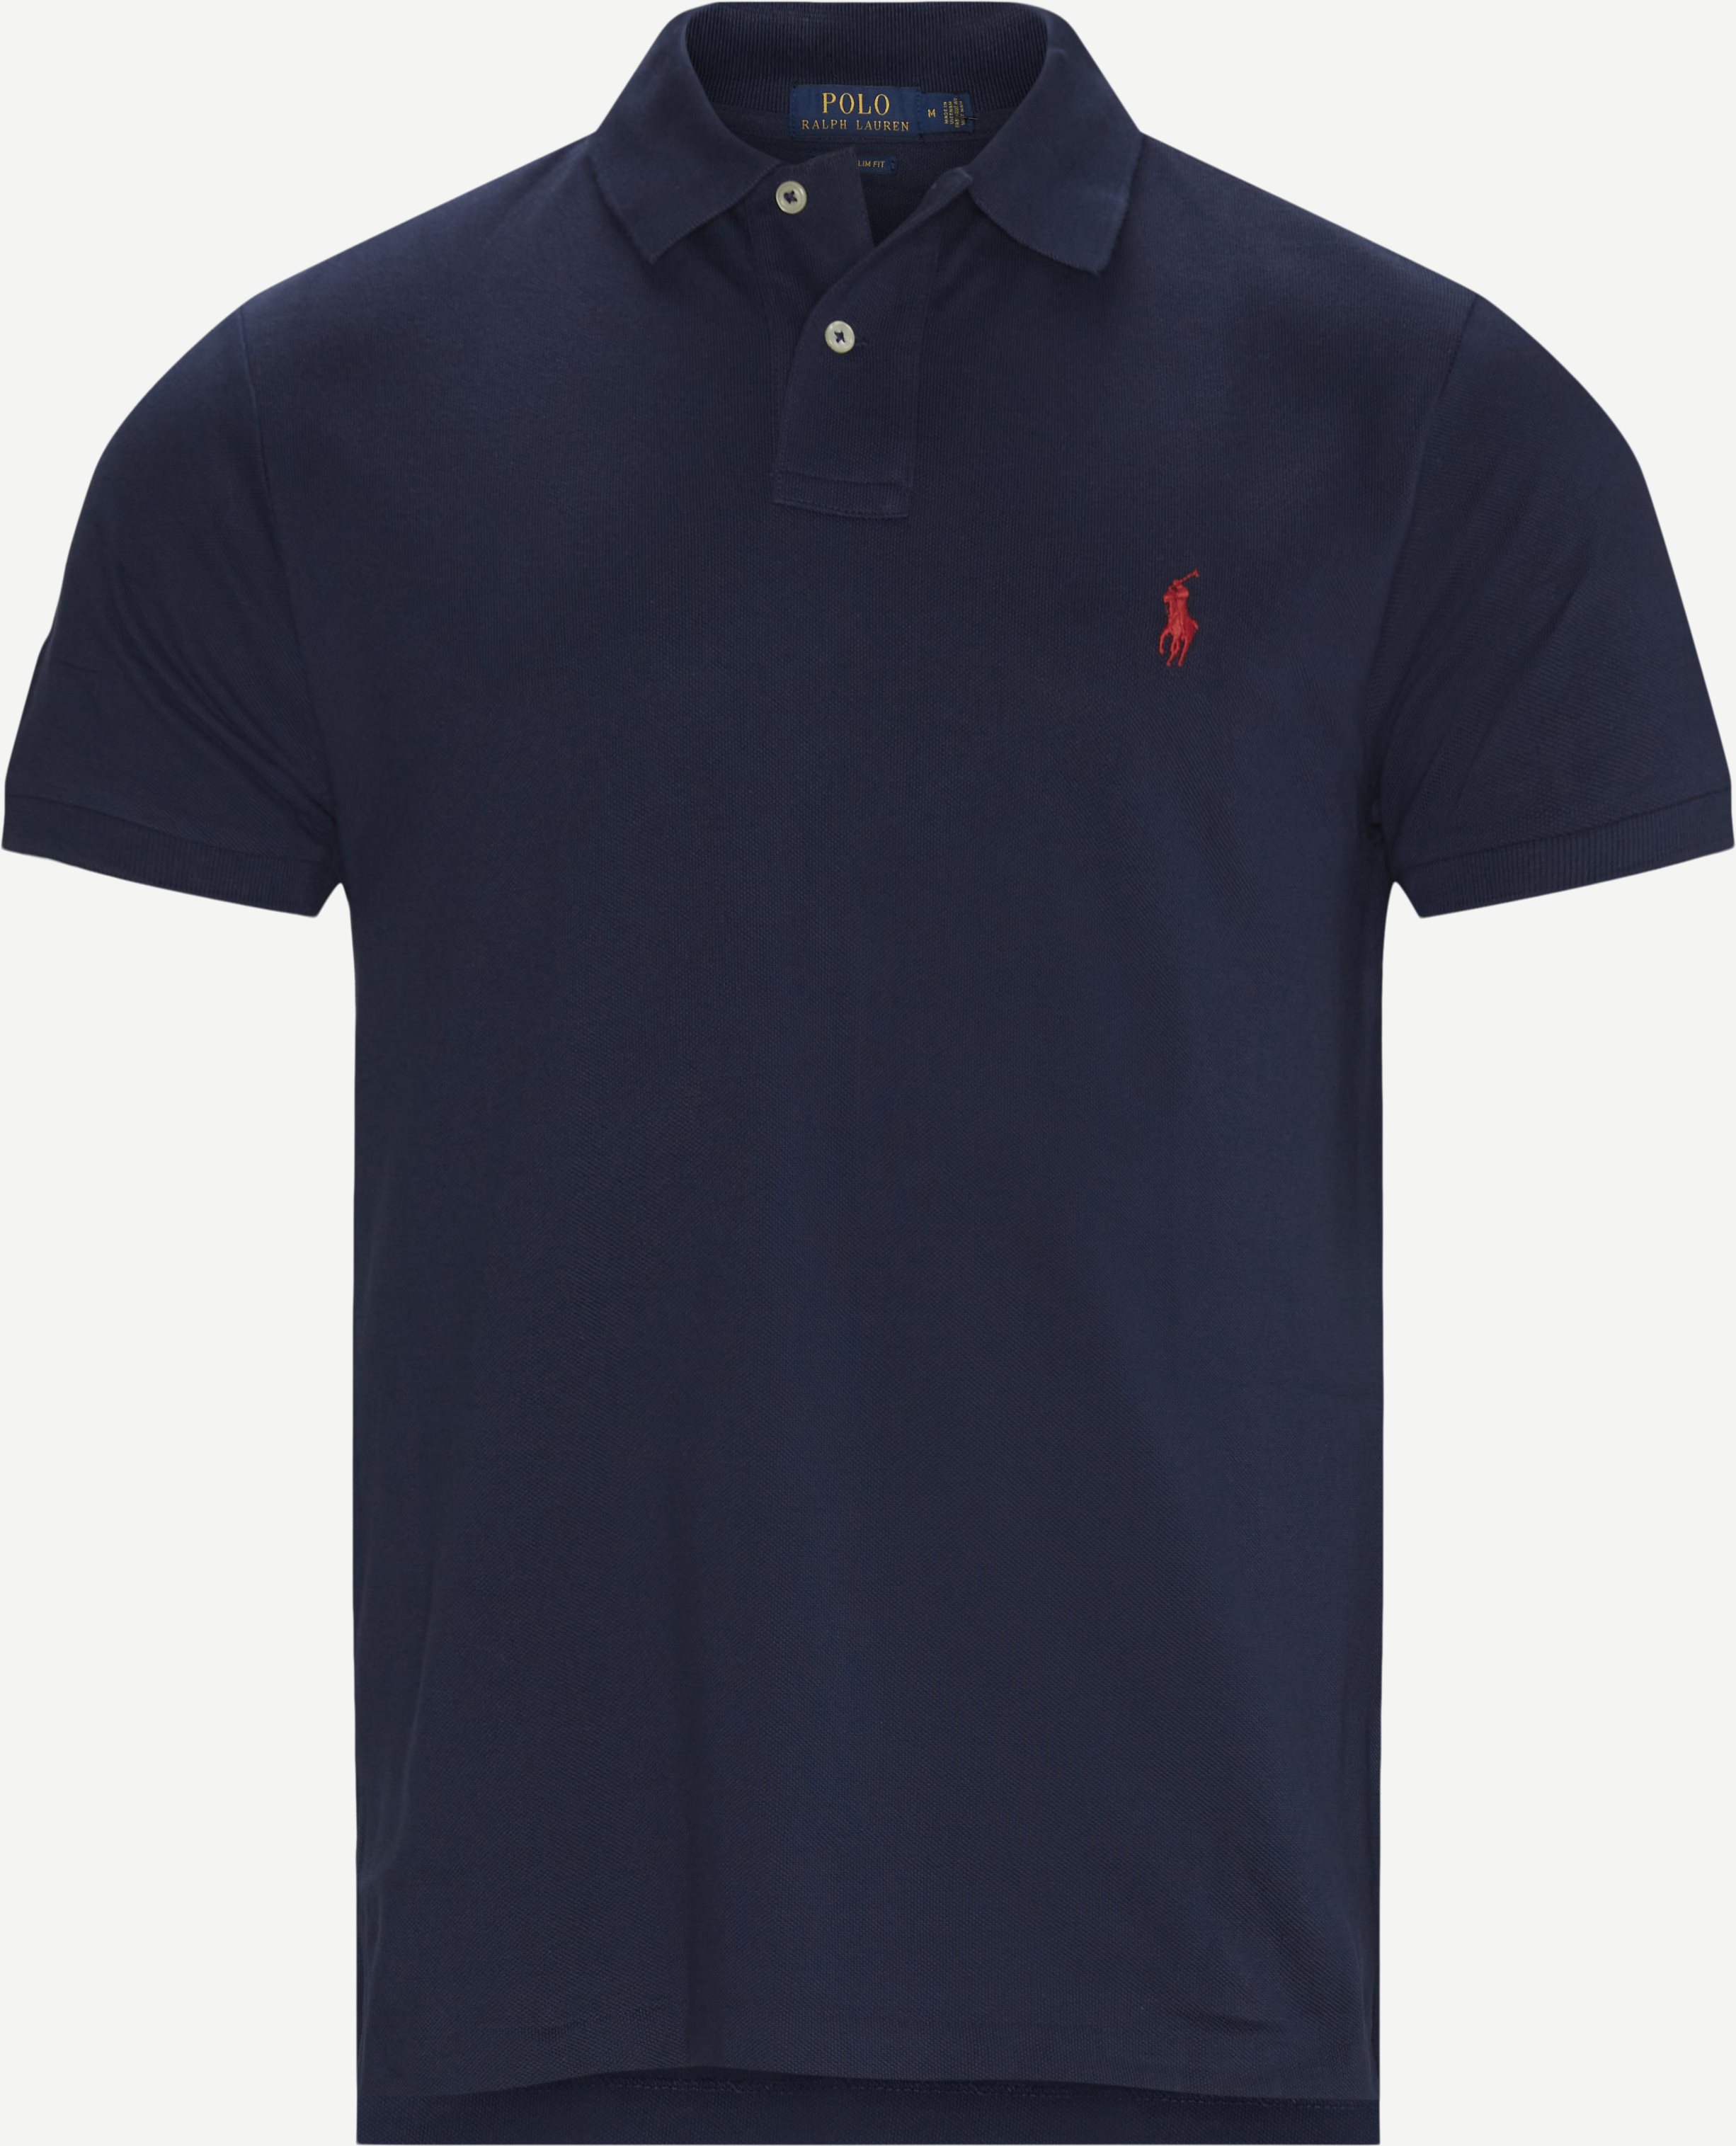 Polo Ralph Lauren T-shirts 710782592. Blue